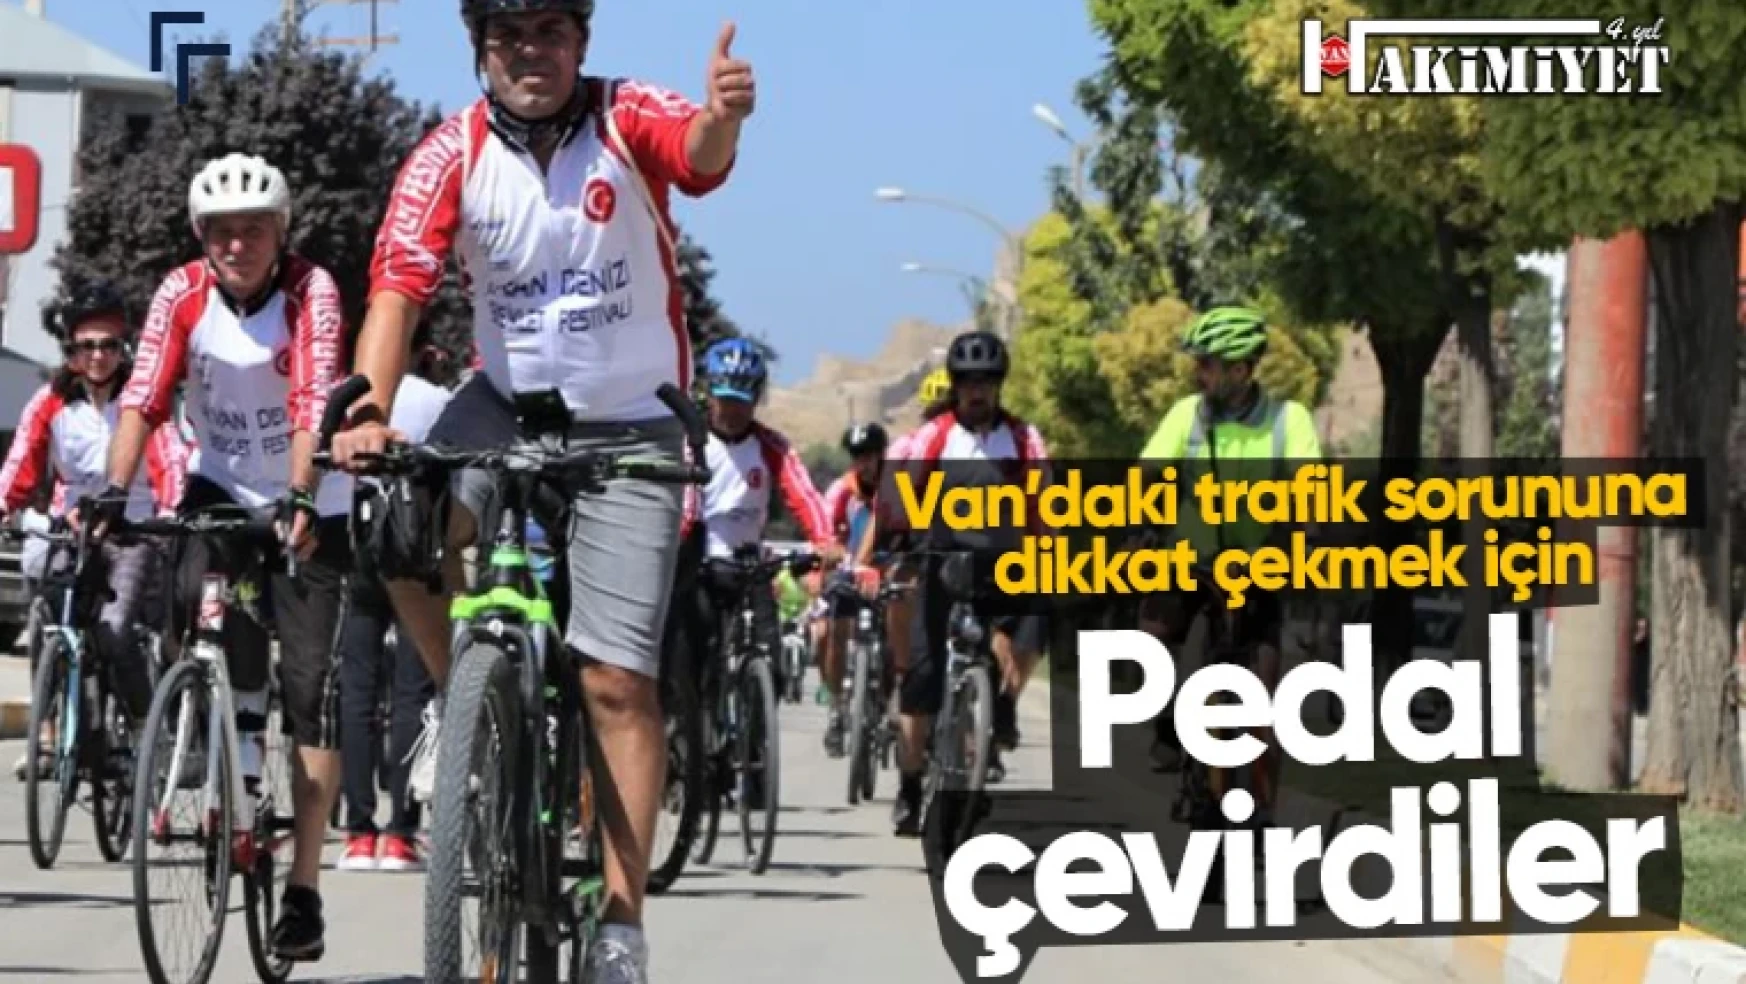 Van'daki trafik sorununa bisikletle dikkat çektiler!